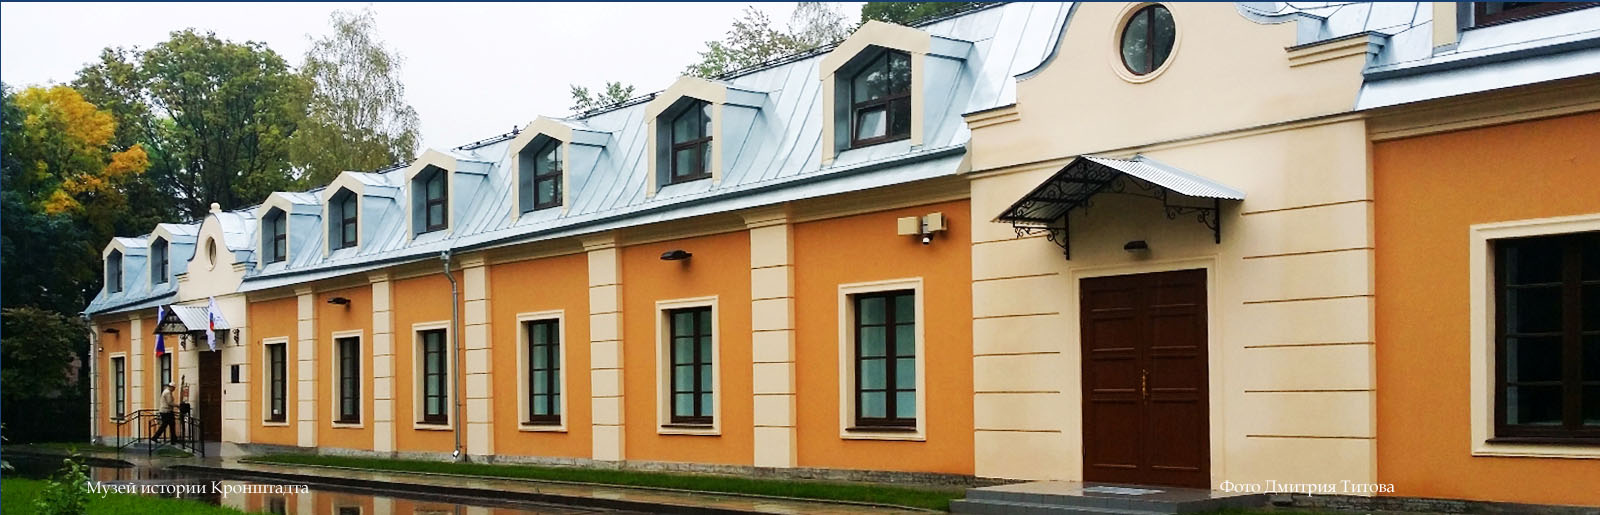 Kronstadt History Museum